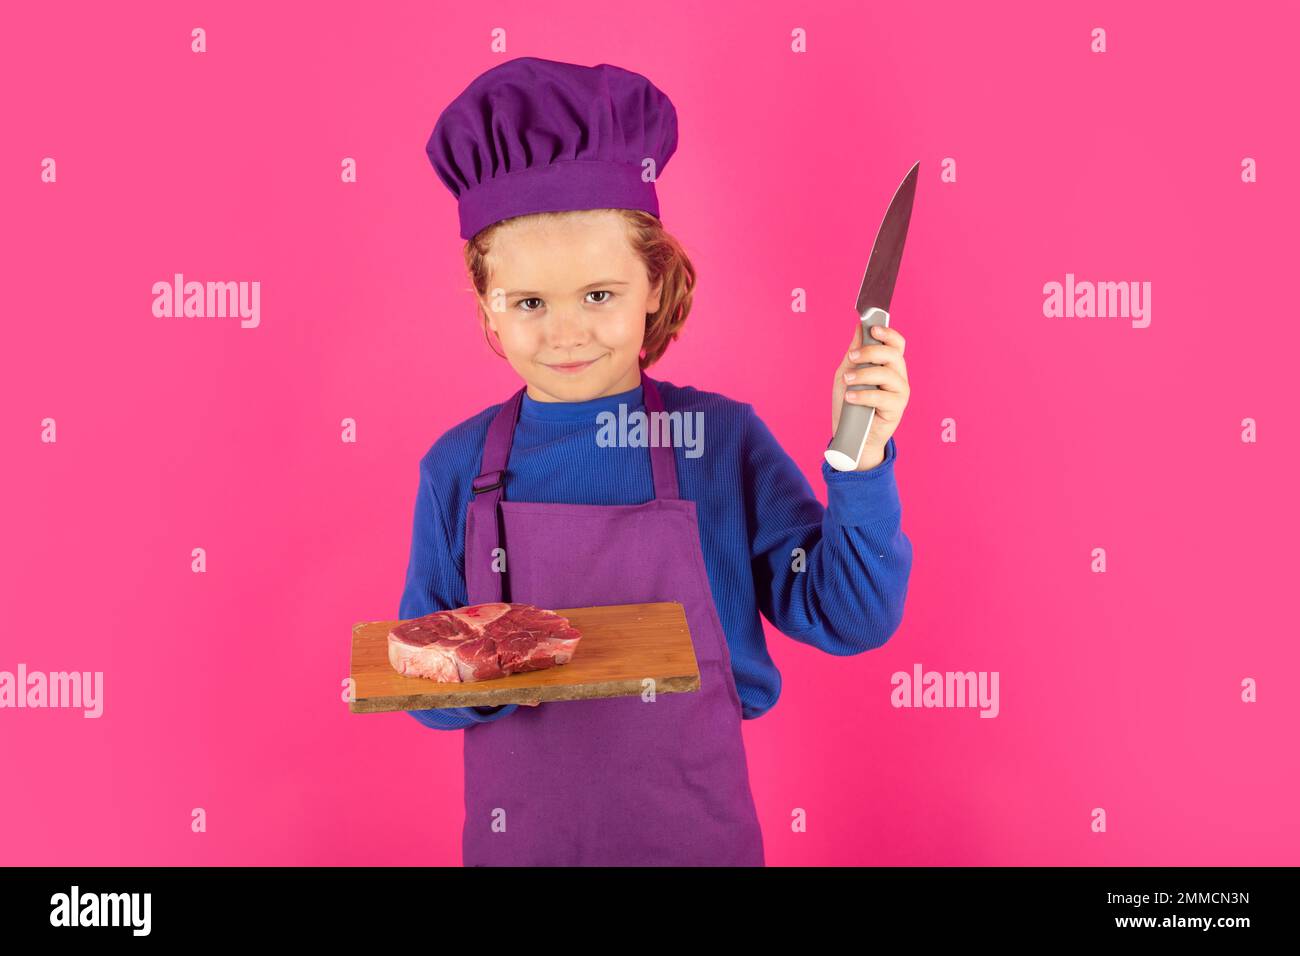 Kinderkoch hält Schneidebrett mit Fleischsteak und Messer. Teenager Junge mit Schürze und Chefhut bereitet eine gesunde Mahlzeit zu. Stockfoto